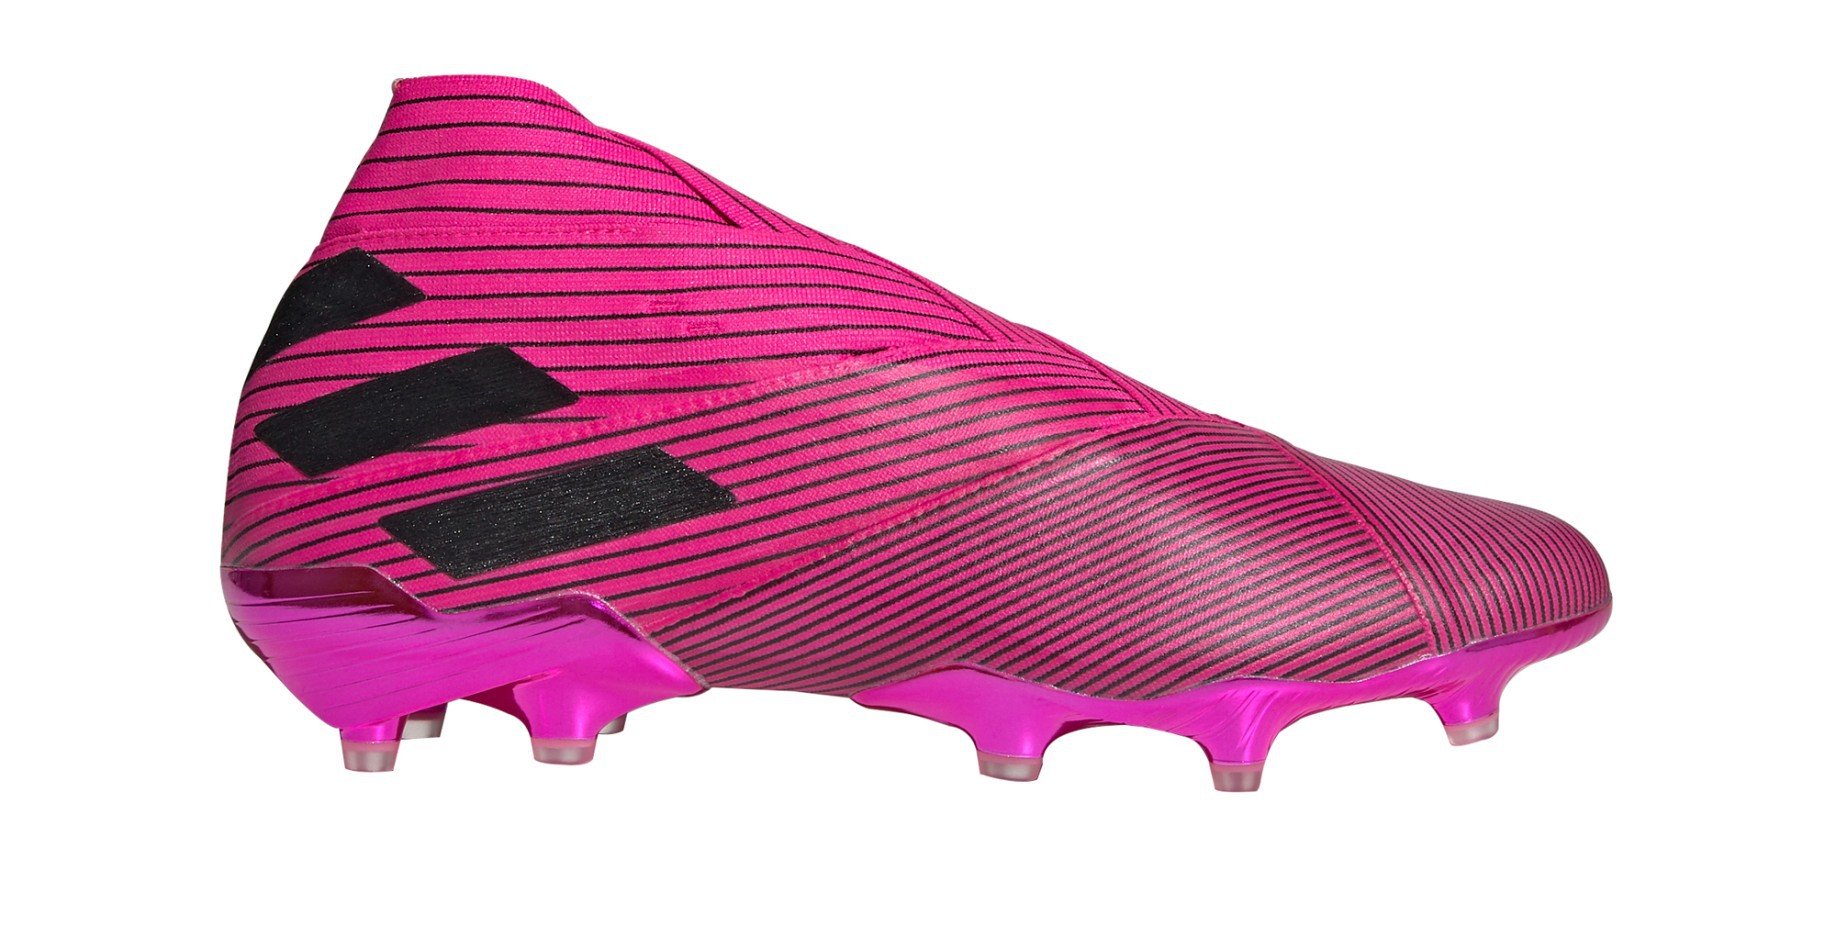 Botas de 19+ FG Cableados Pack colore viola - Adidas - SportIT.com